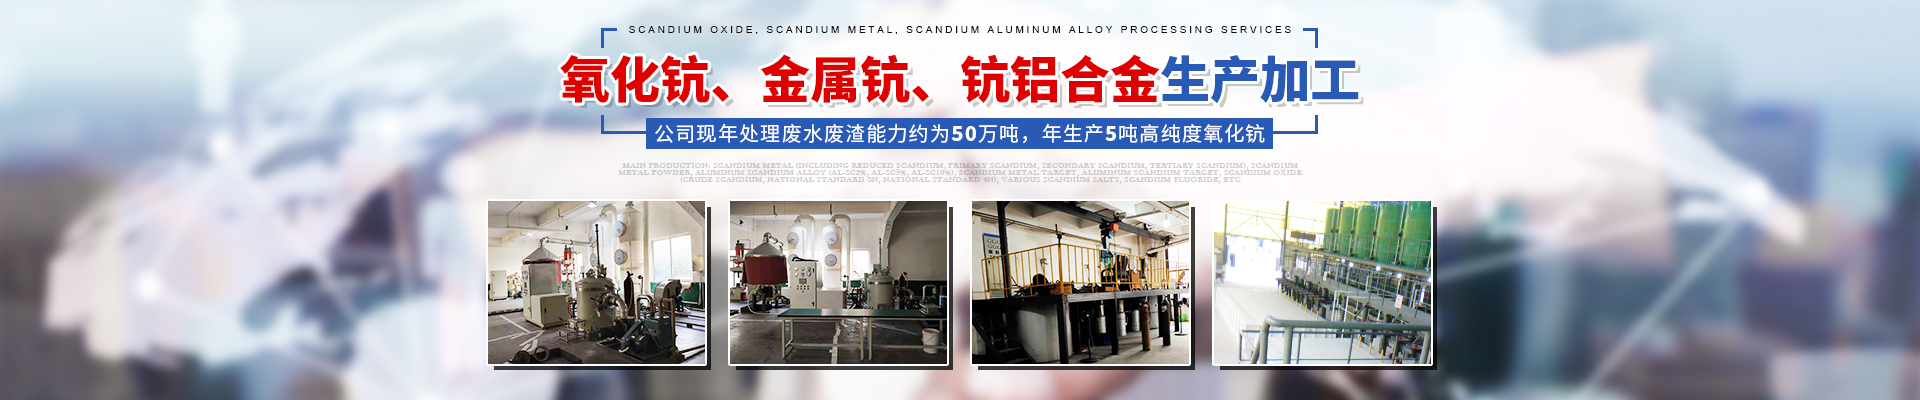 湖南金坤新材料有限公司_株洲氧化钪等金属产品的纯化精制|钪合金产品的研究和生产